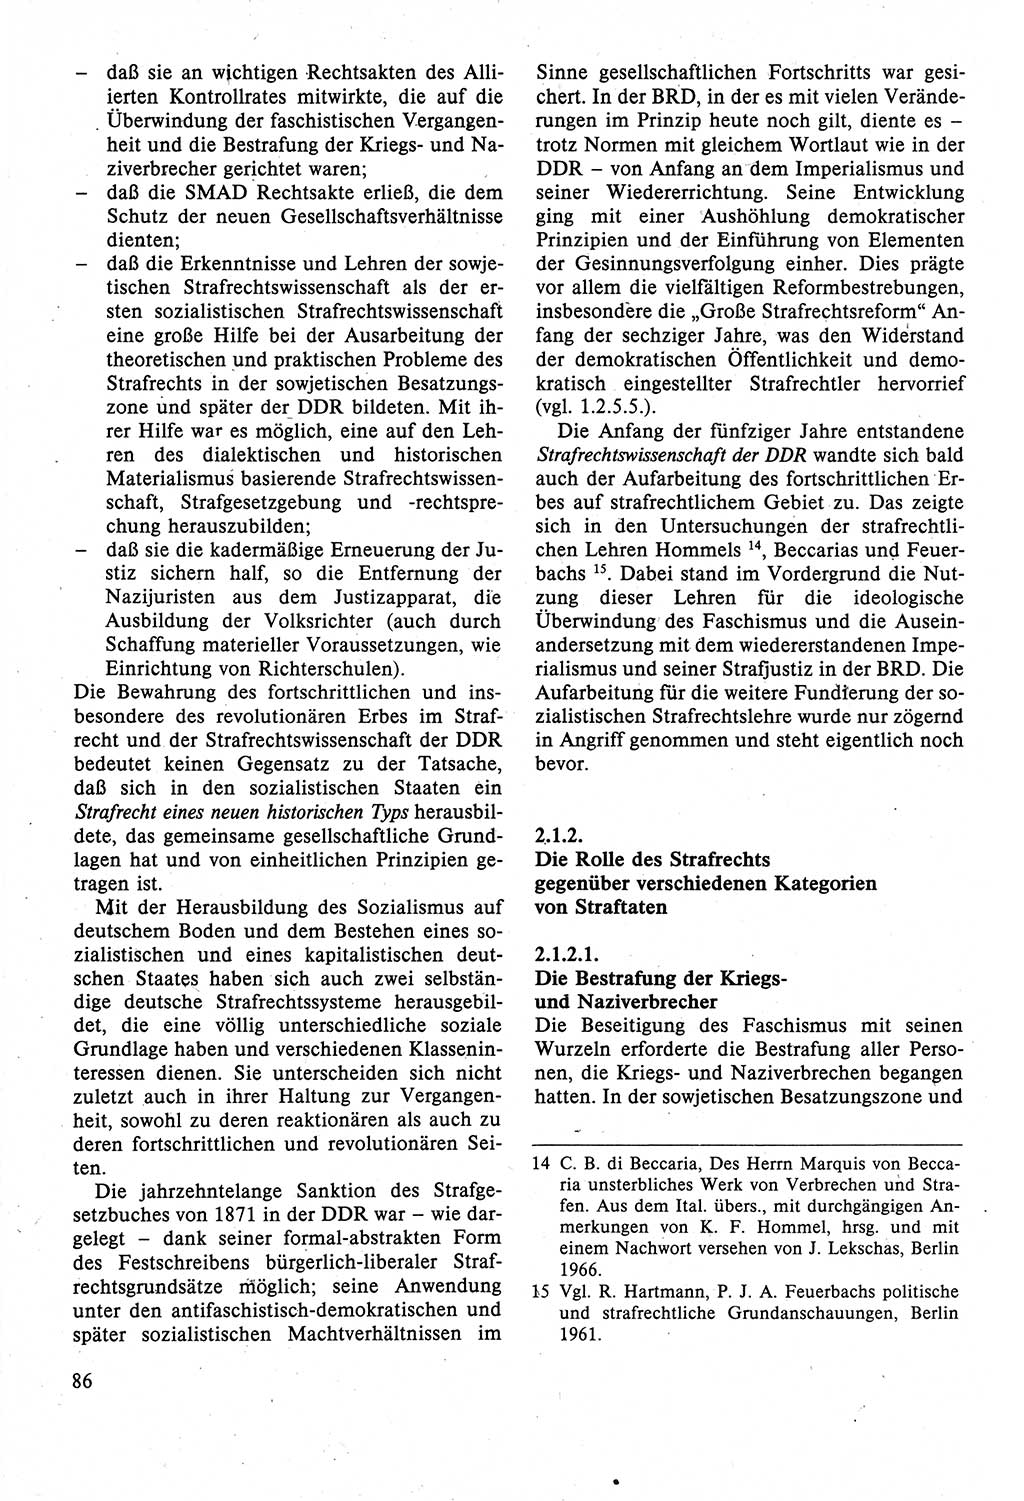 Strafrecht der DDR (Deutsche Demokratische Republik), Lehrbuch 1988, Seite 86 (Strafr. DDR Lb. 1988, S. 86)